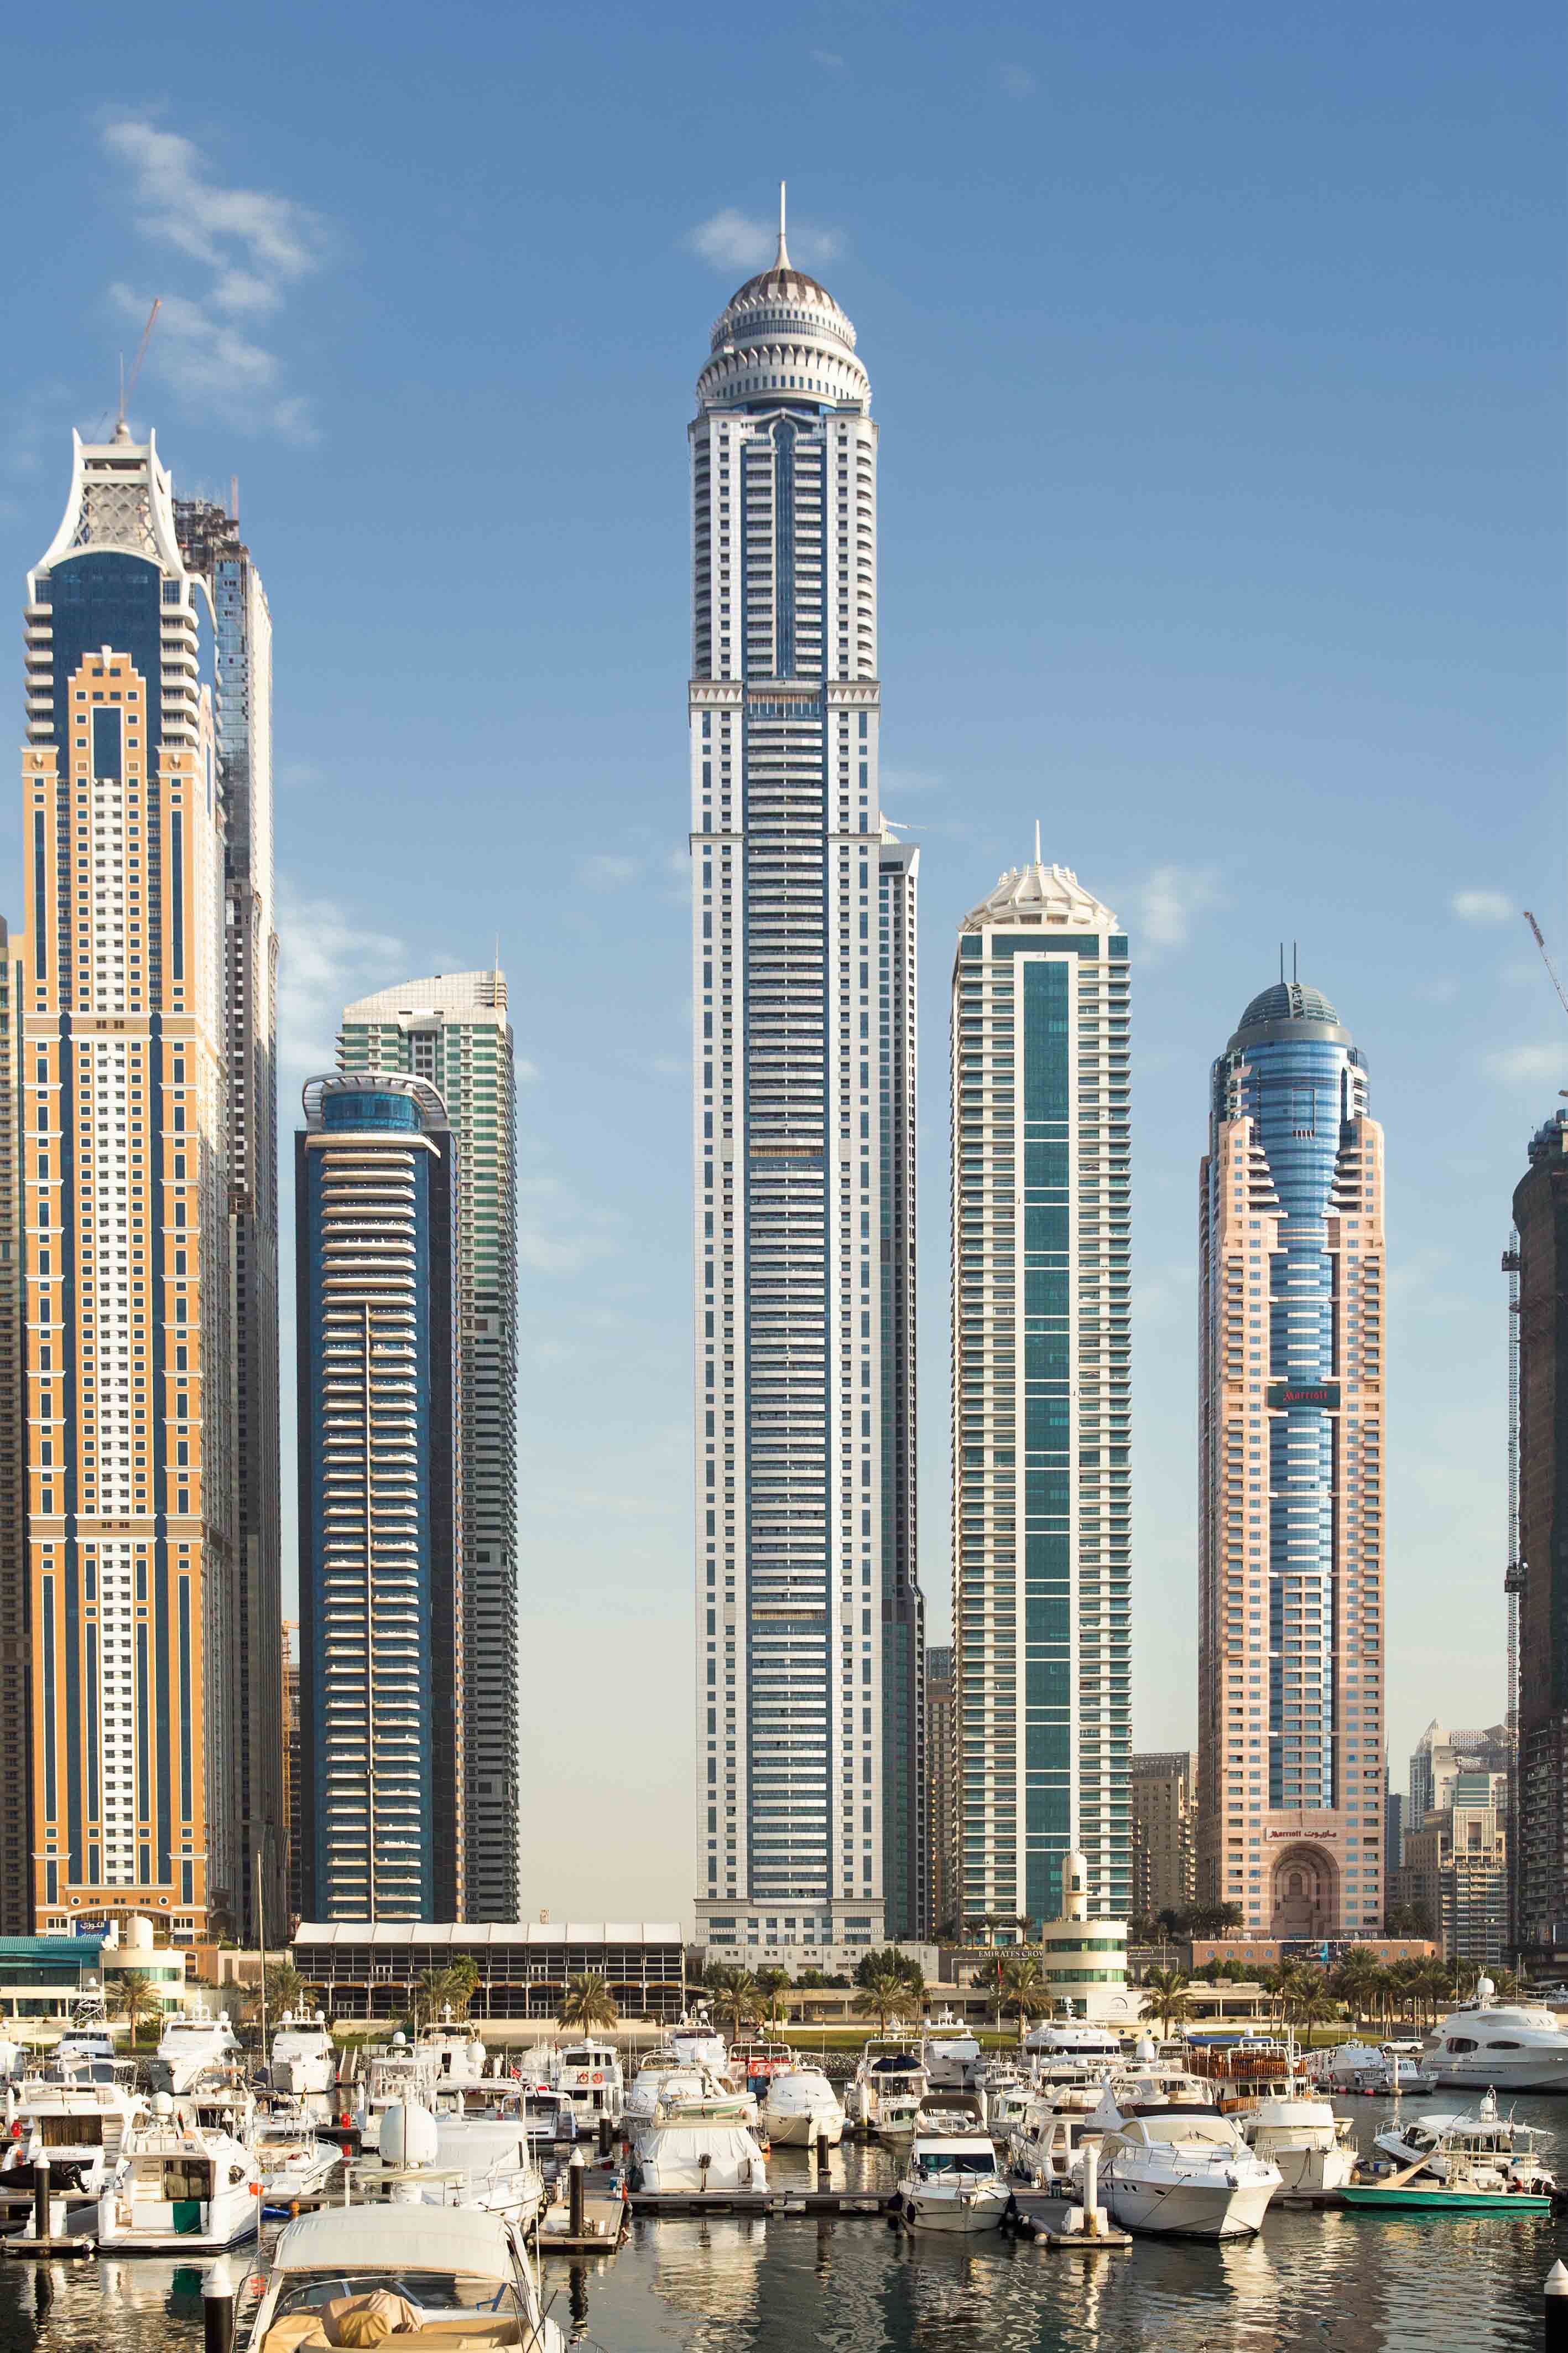 𝐏𝐫𝐢𝐧𝐜𝐞𝐬𝐬 𝐓𝐨𝐰𝐞𝐫 – Third tallest skyscraper in Dubai